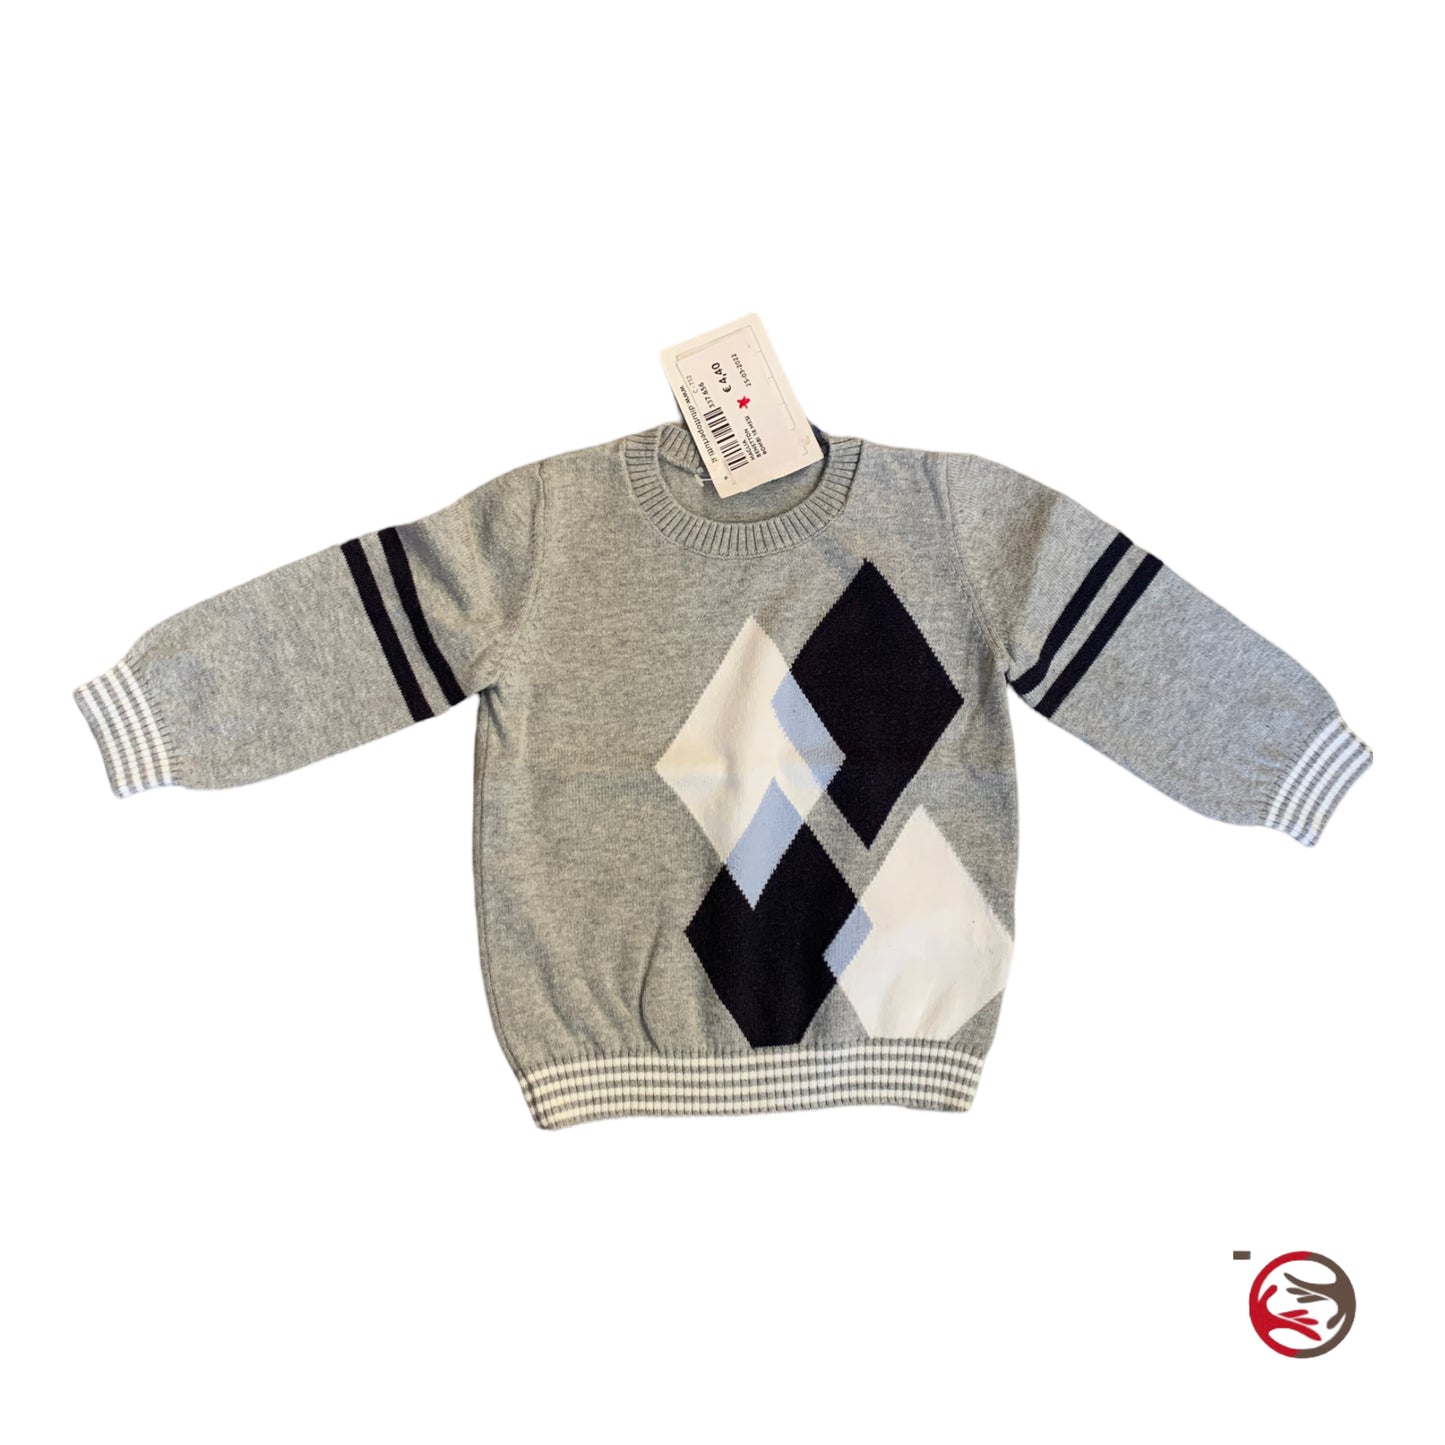 Benetton rhombus cotton sweater for children 18 months